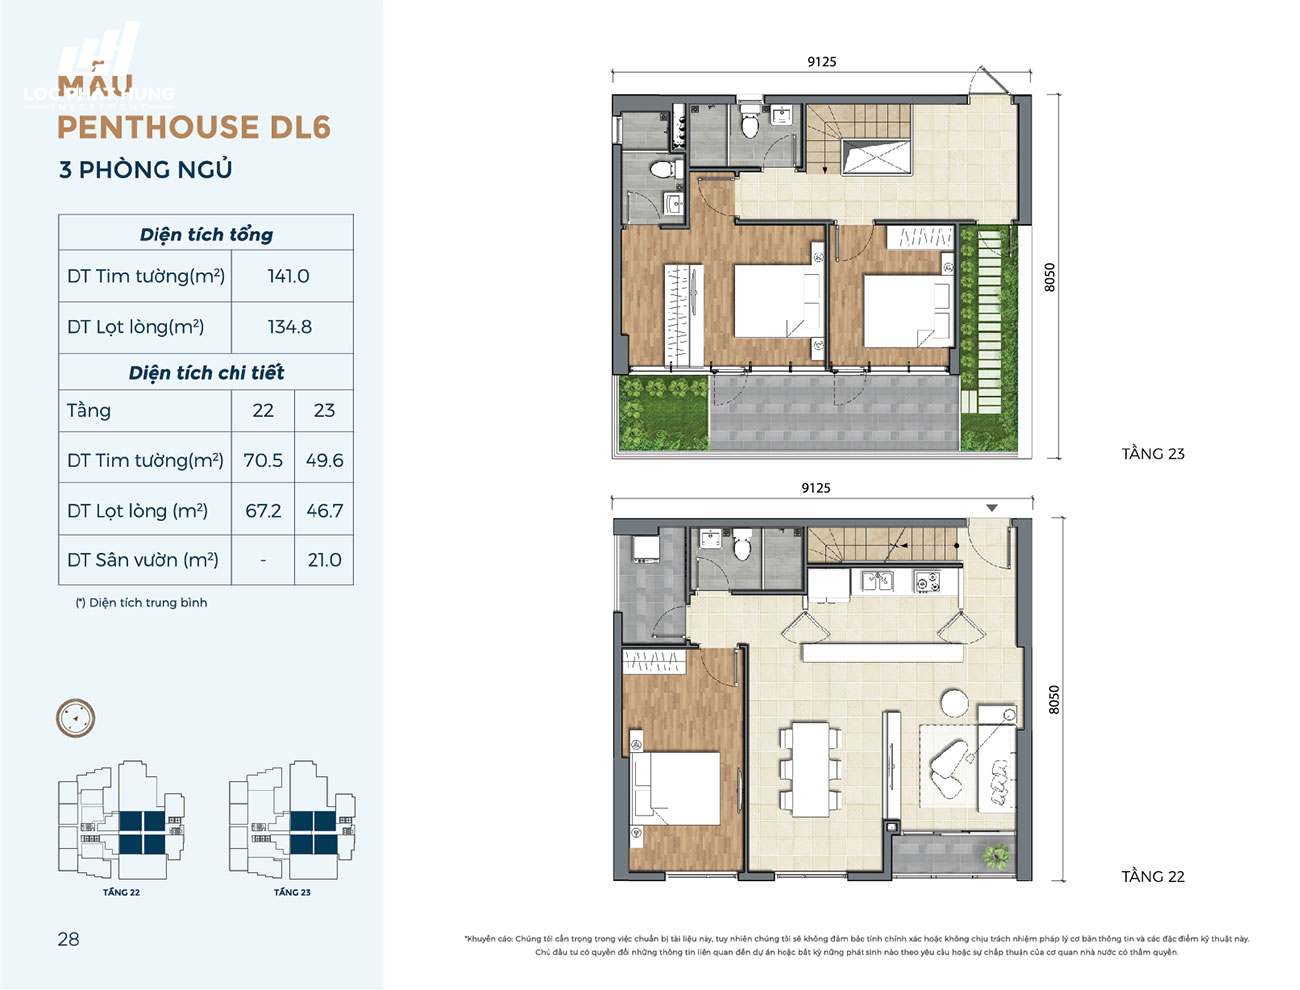 Thiết kế chi tiết dự án căn hộ chung cư Precia Quận 2 Đường Nguyễn Thị Định chủ đầu tư Minh Thông